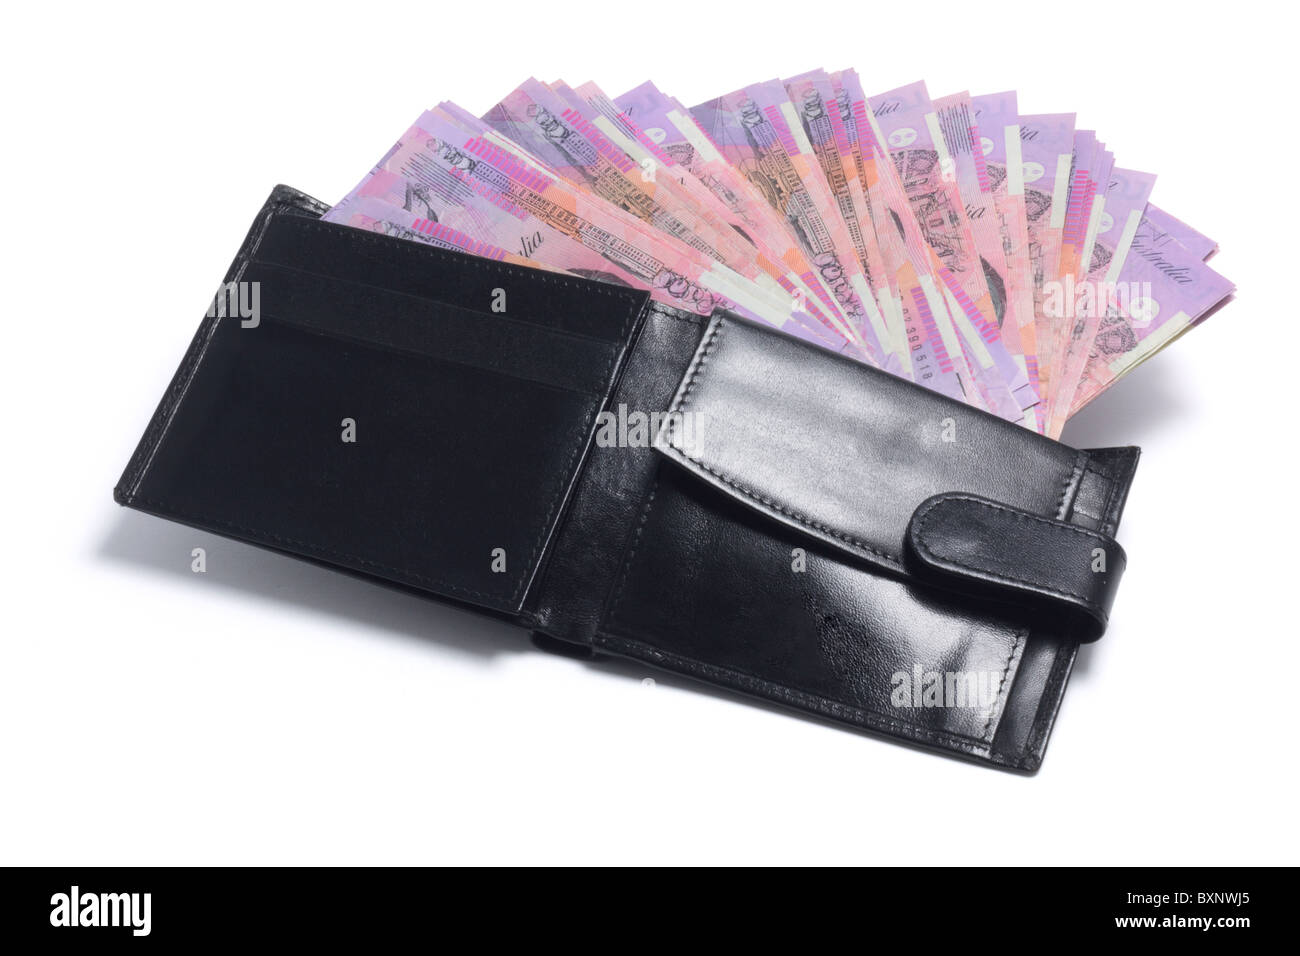 Porte-monnaie avec des billets de banque Photo Stock - Alamy